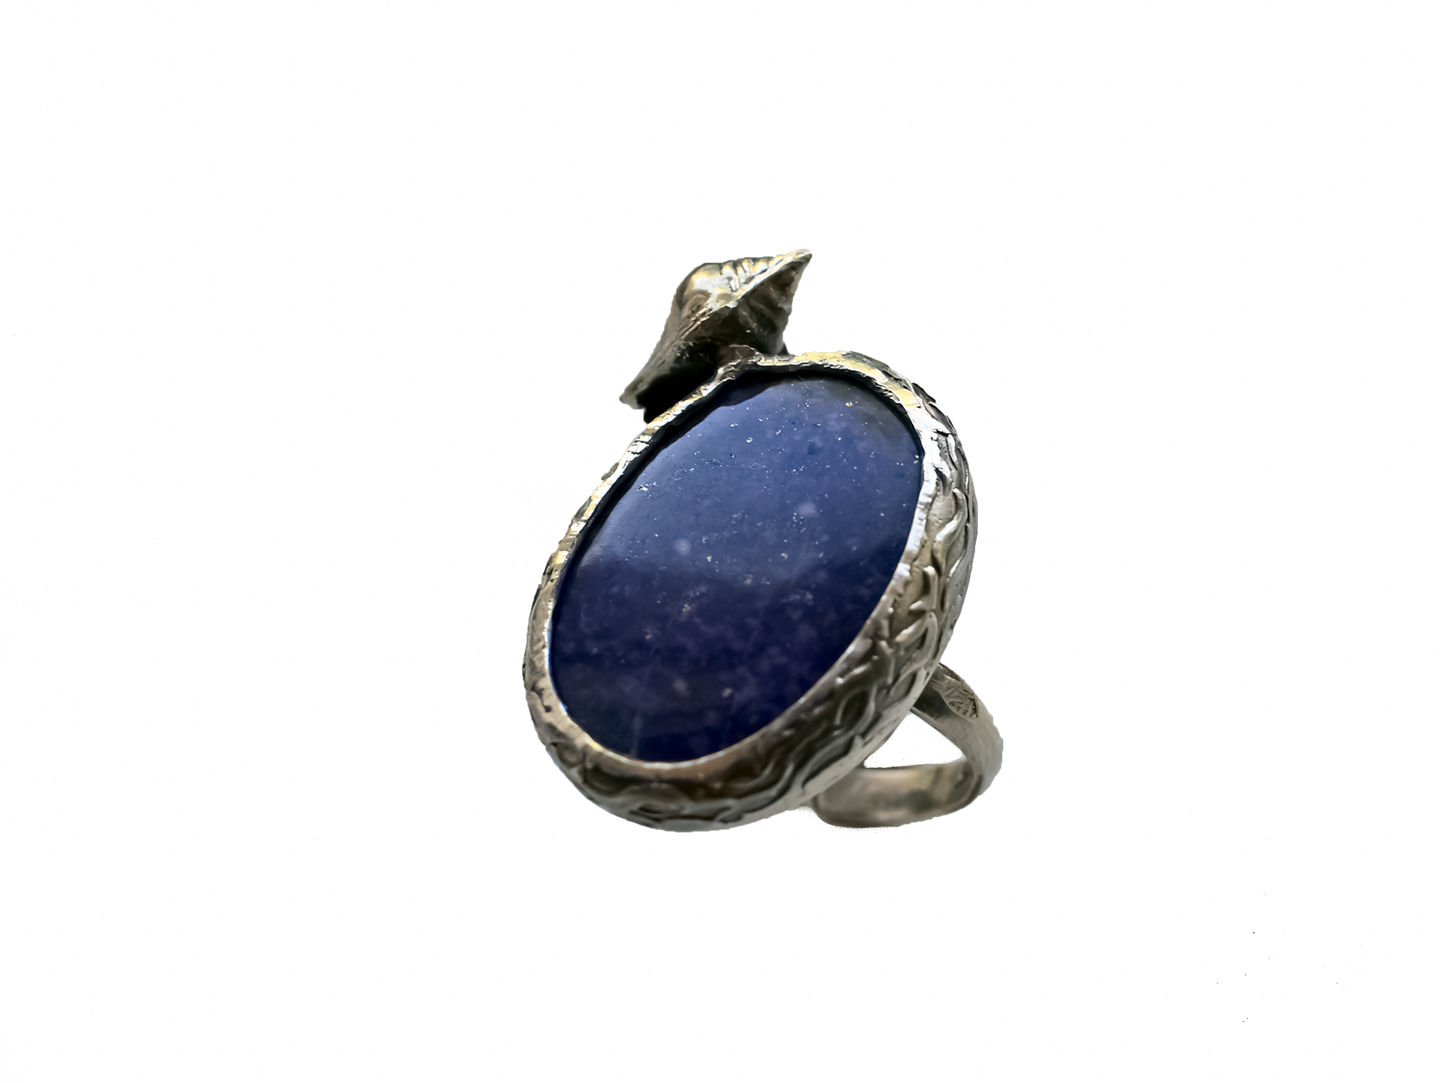 Lapis Lazuli - El Yapımı 925 Ayar Gümüş Yüzük